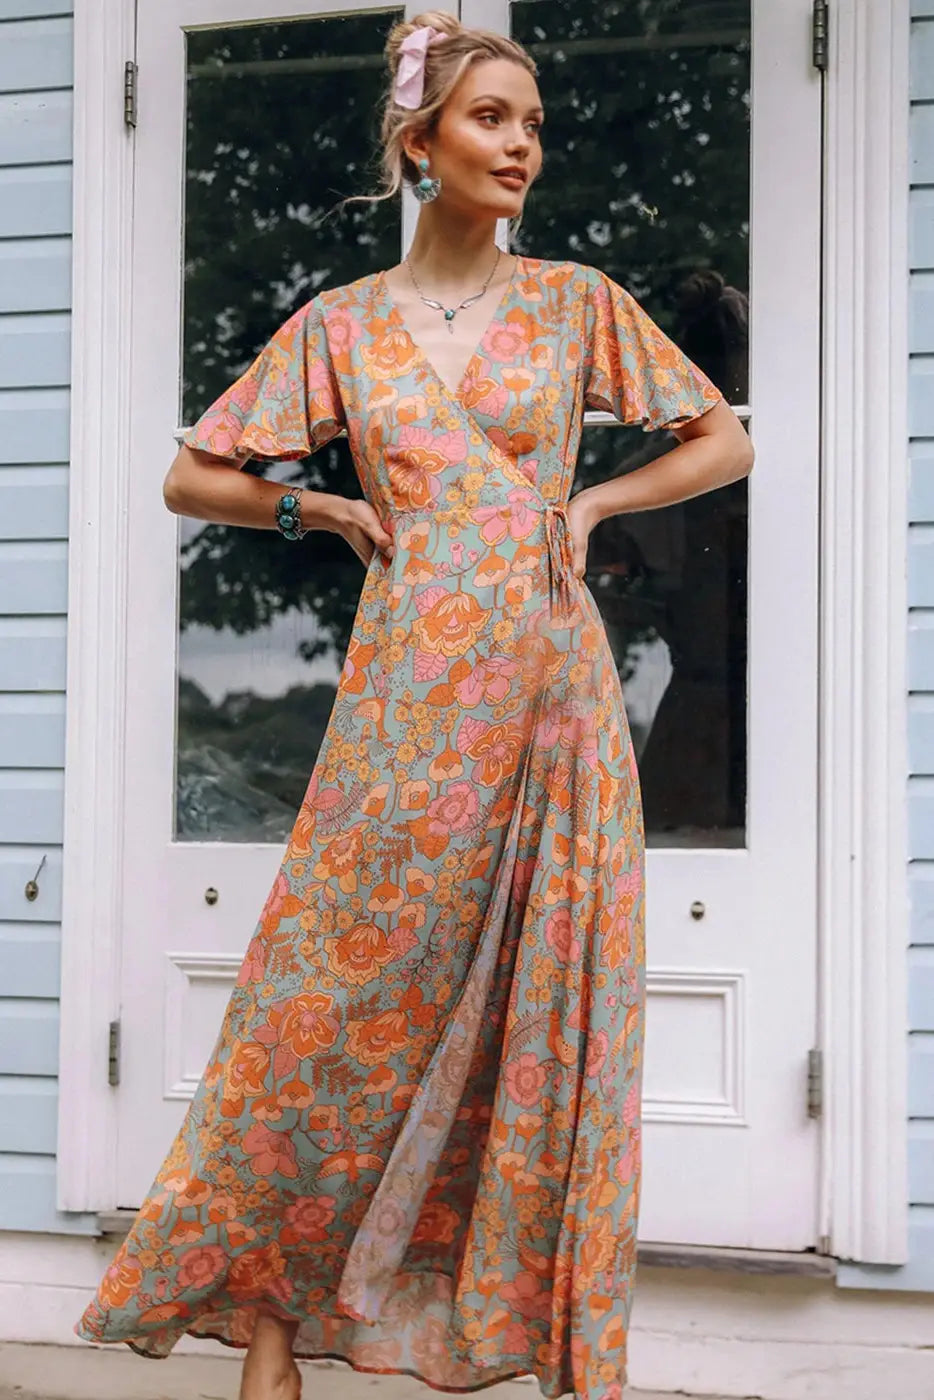 Bohemian Fashion Floral Printed High Waist Wrap Maxi Dress